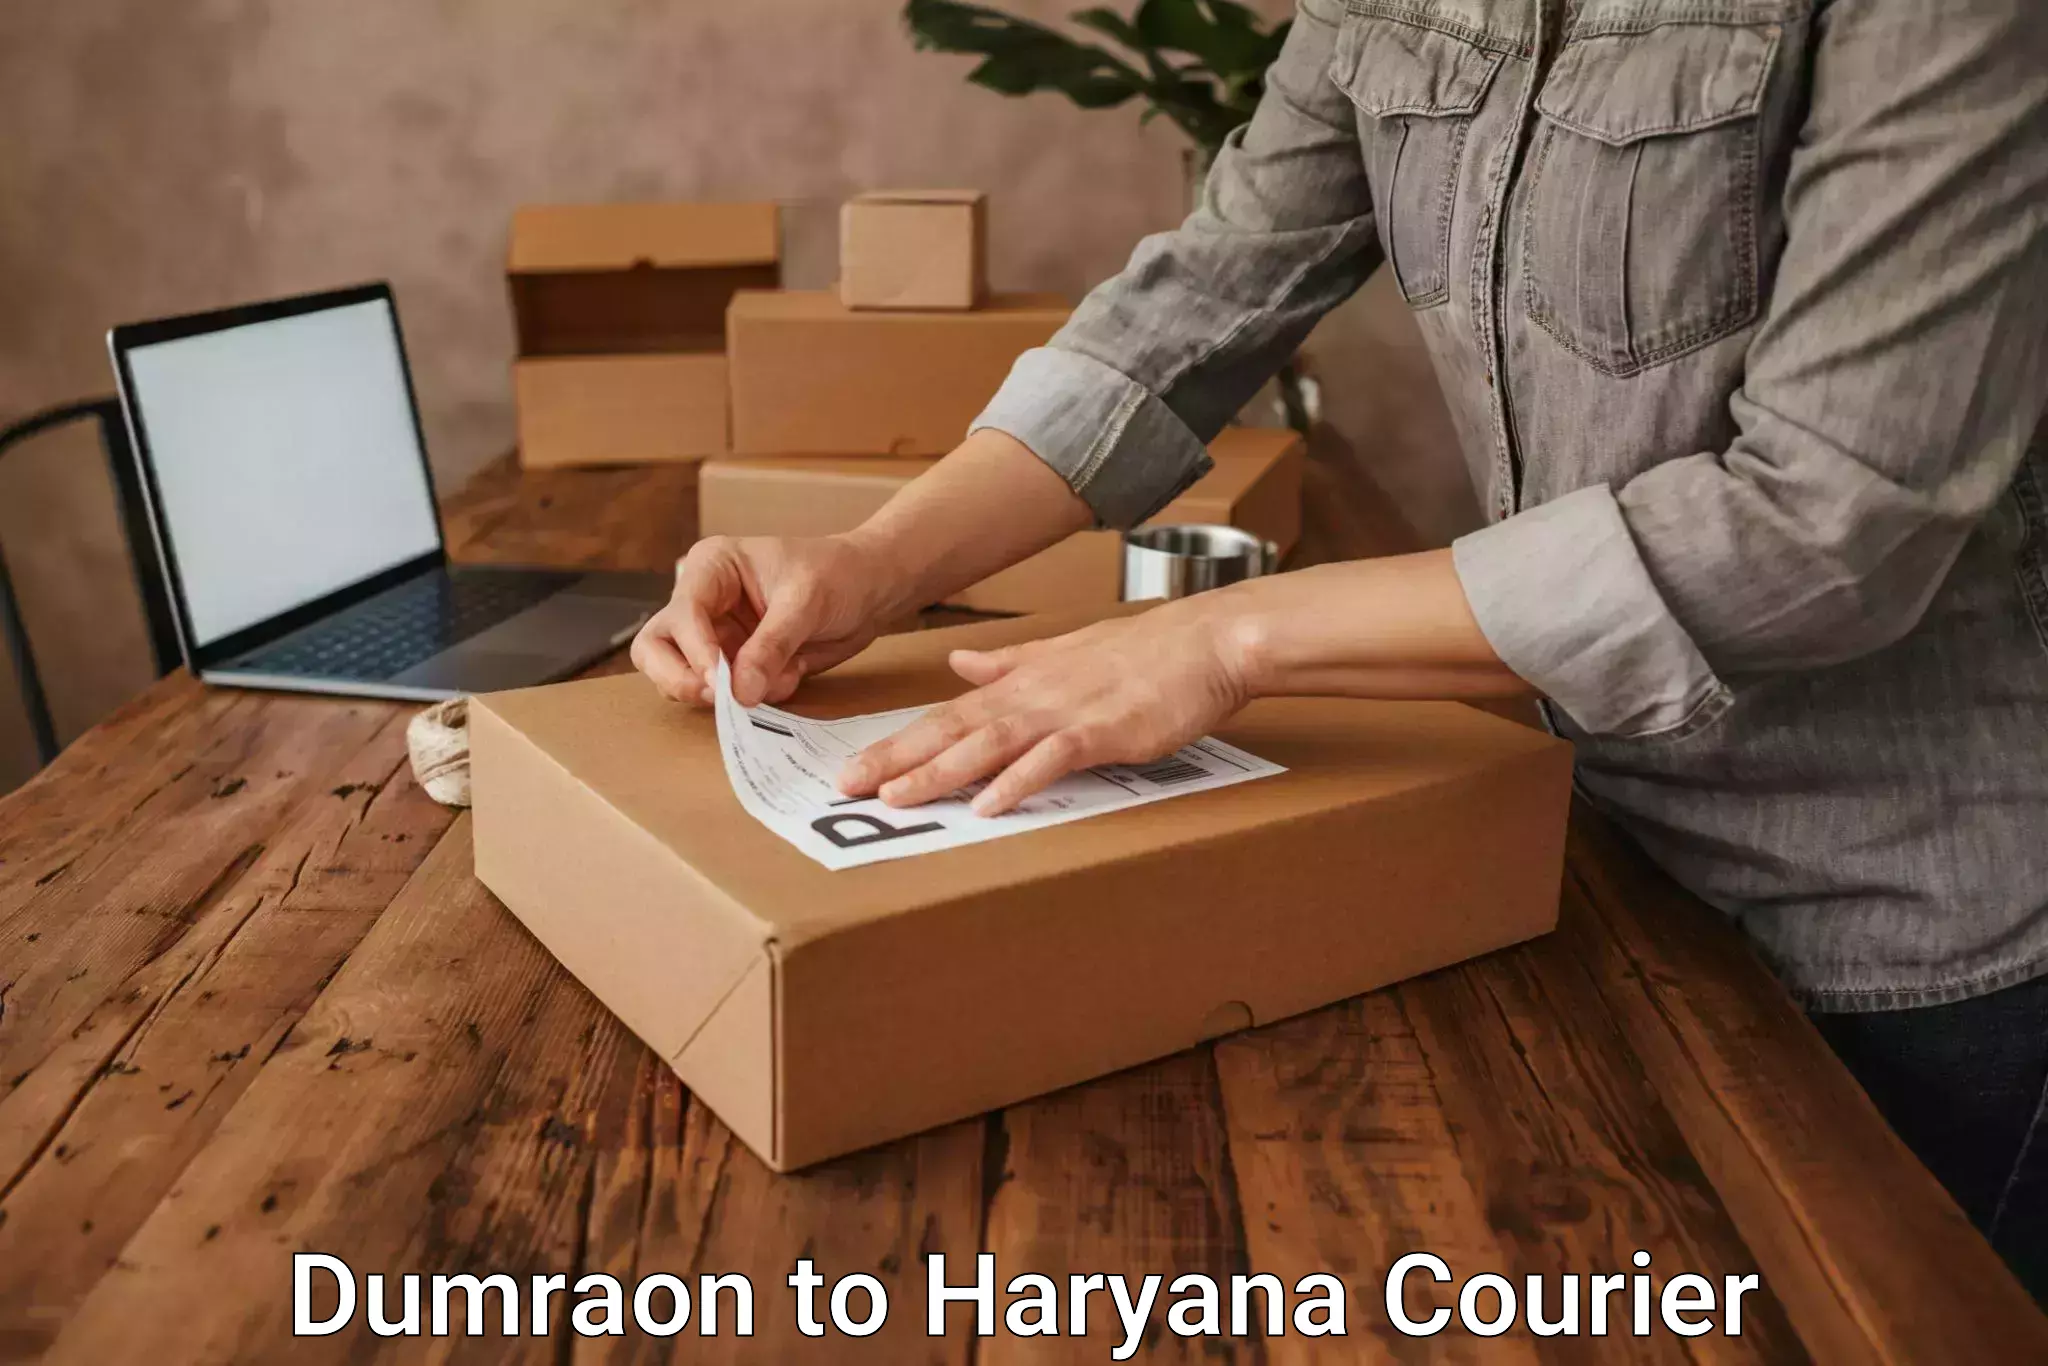 Furniture transport service Dumraon to NCR Haryana